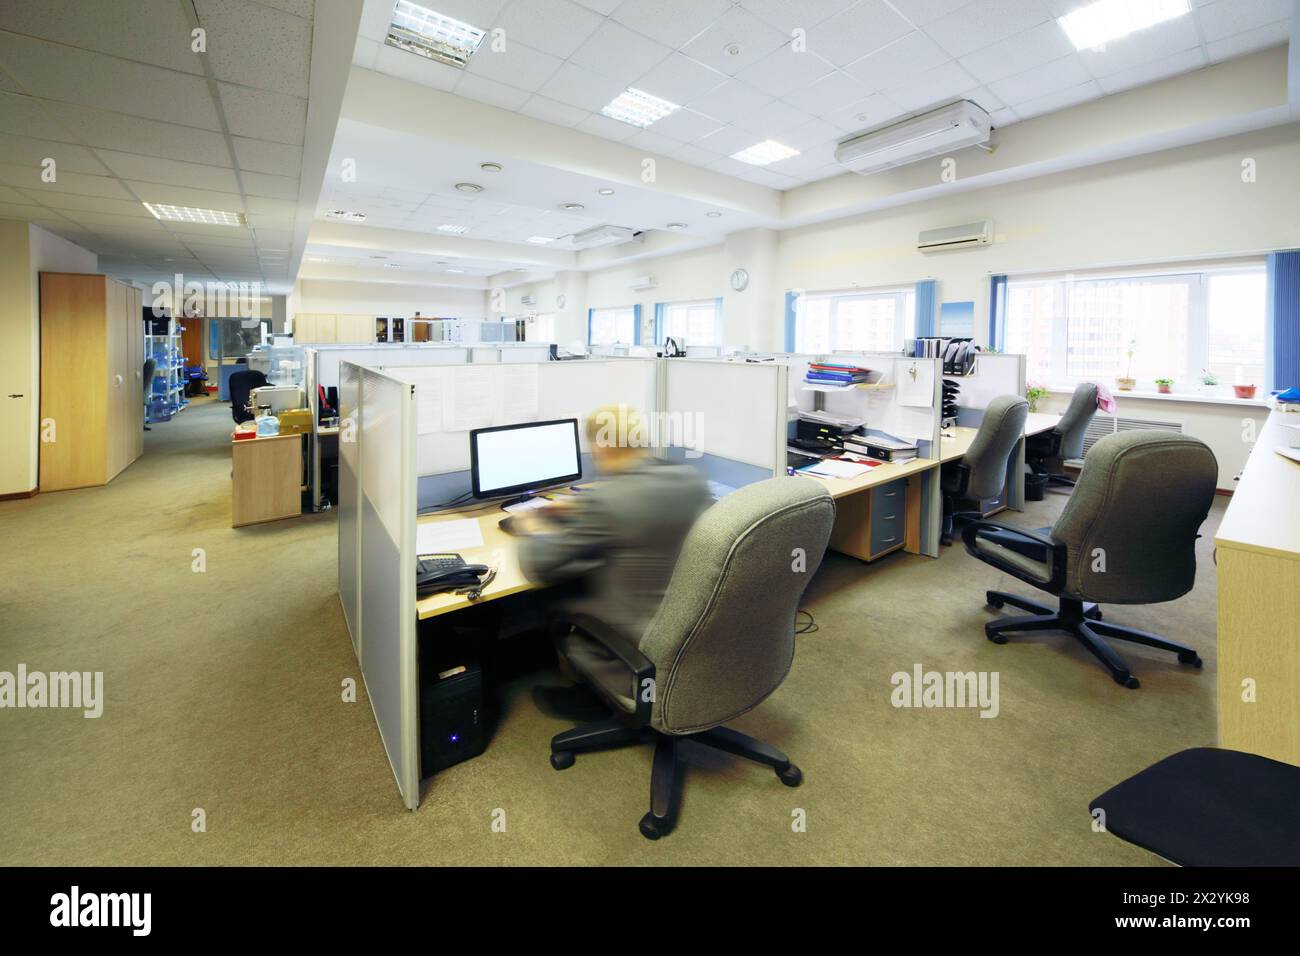 Die Leute sitzen in einem großen, hellen Büro mit getrennten Arbeitsplätzen. Stockfoto